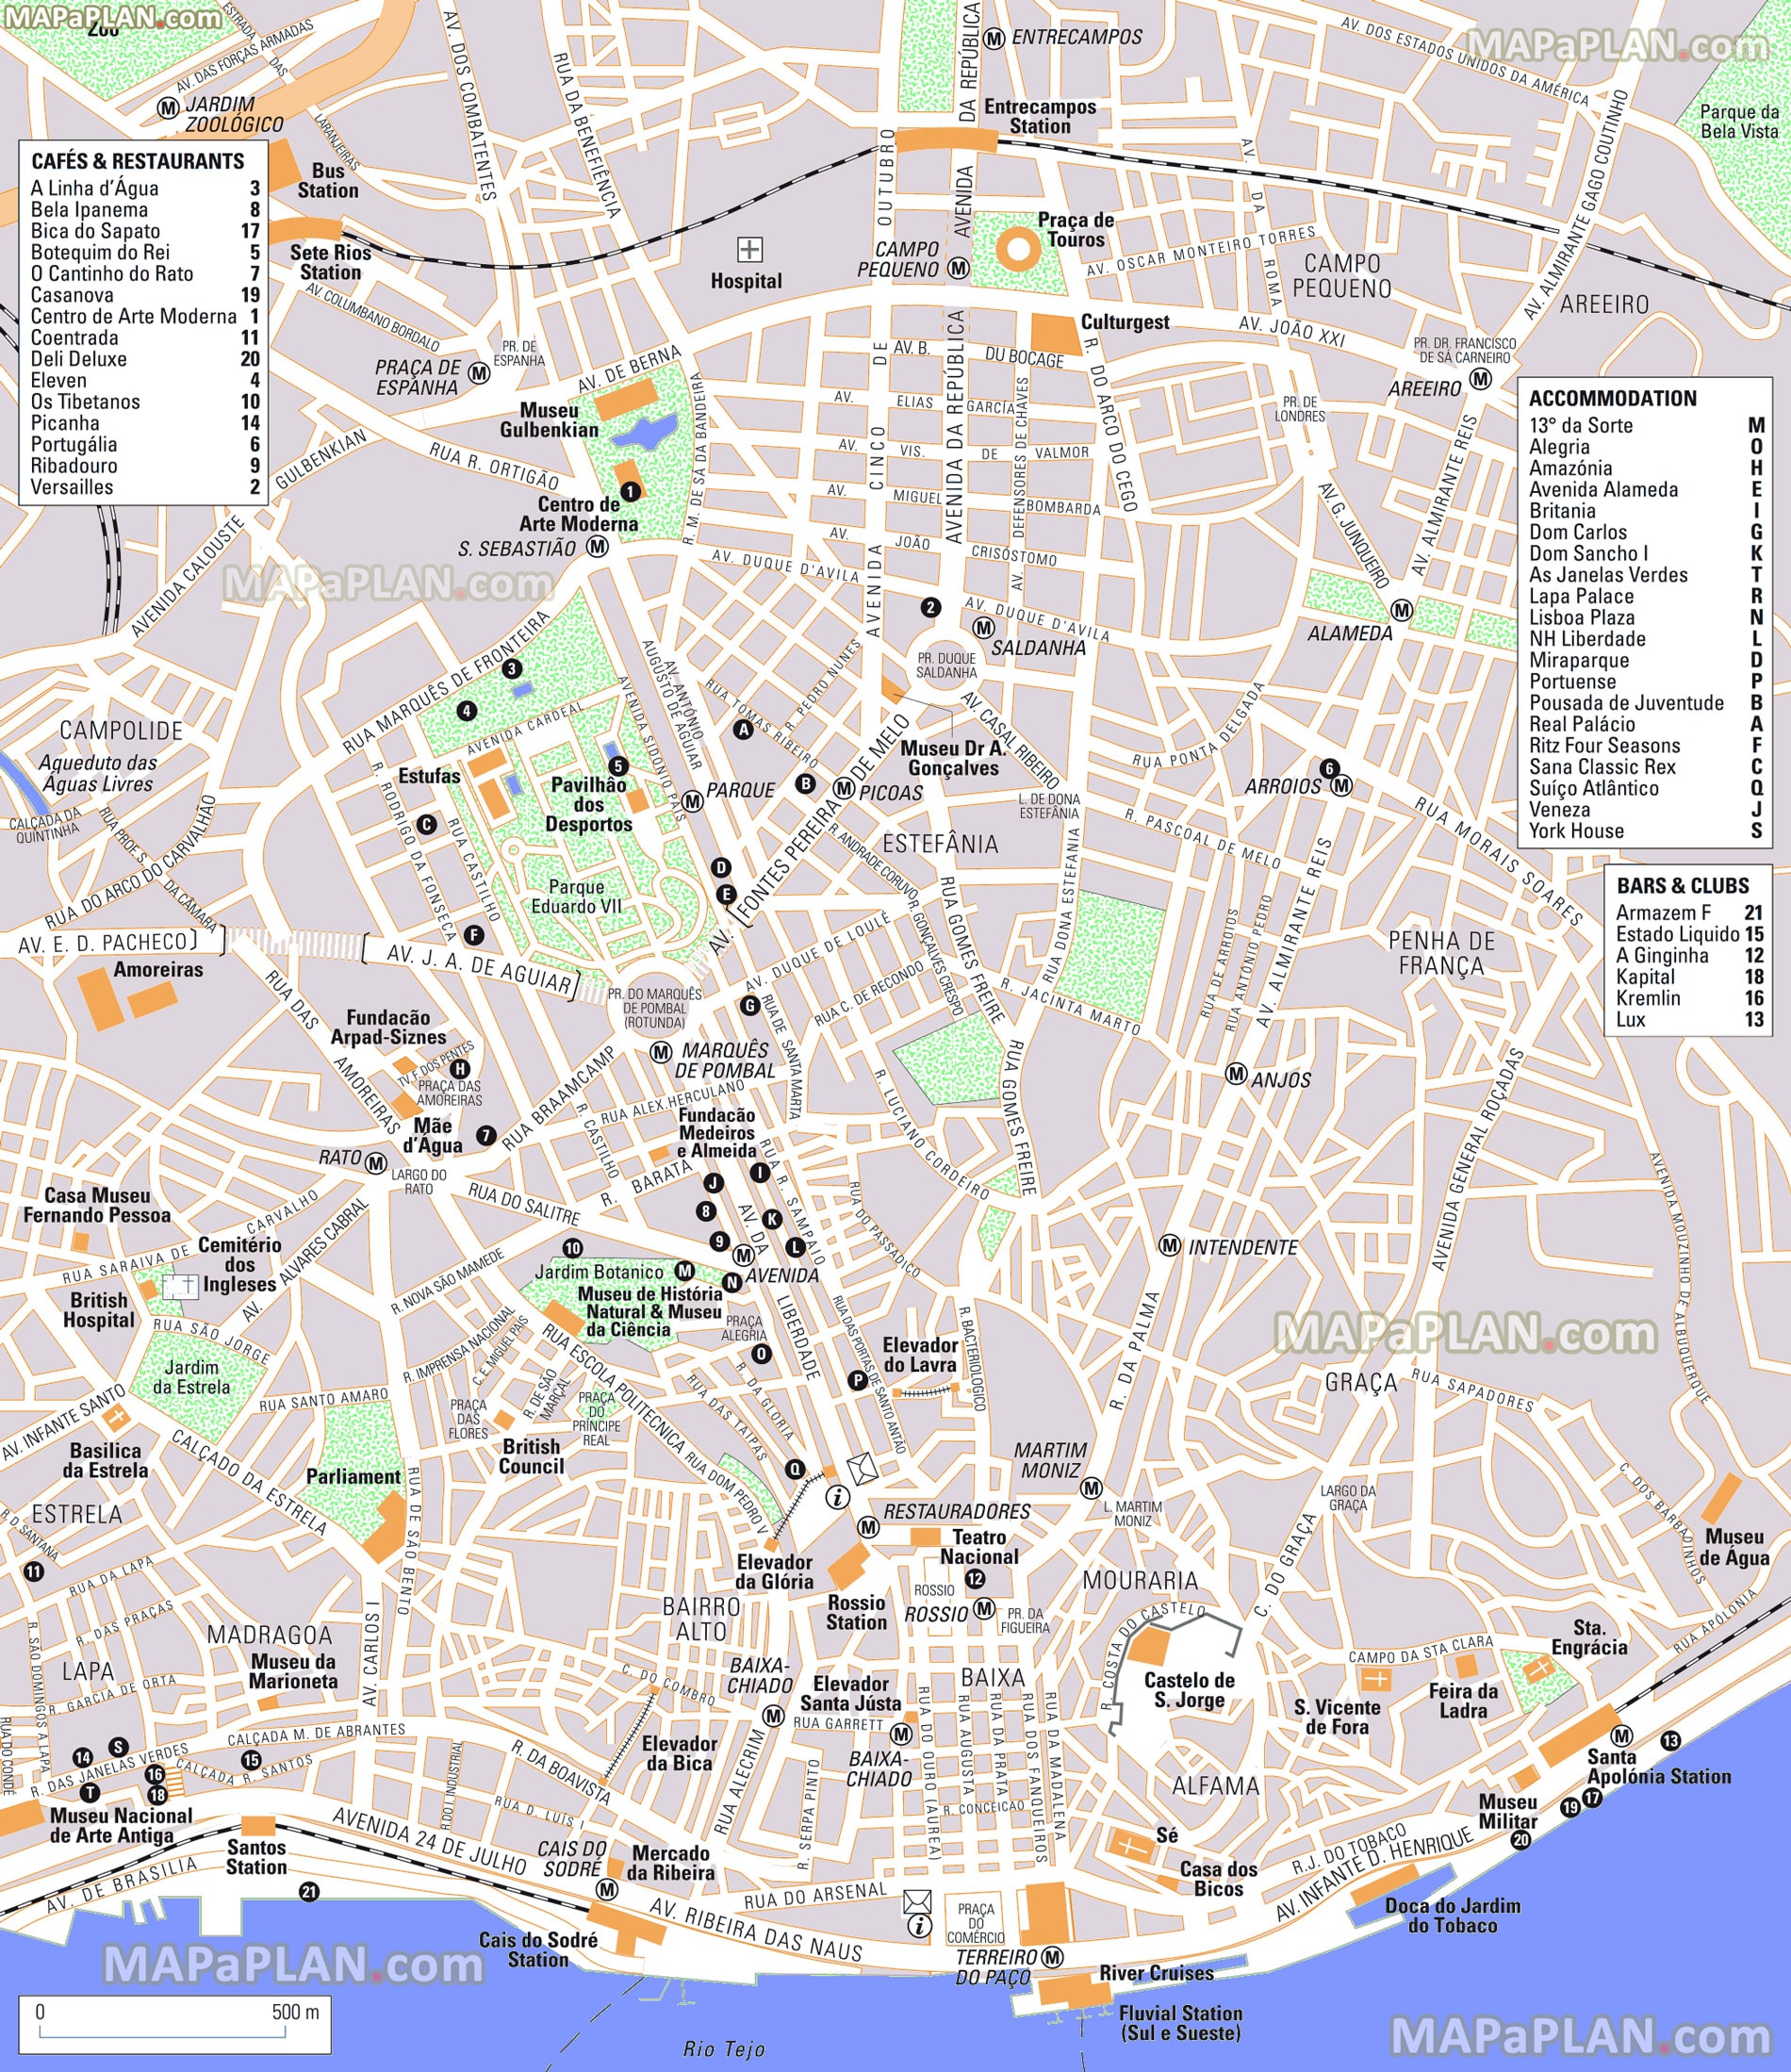 Mappa e piano del centro di Lisbona